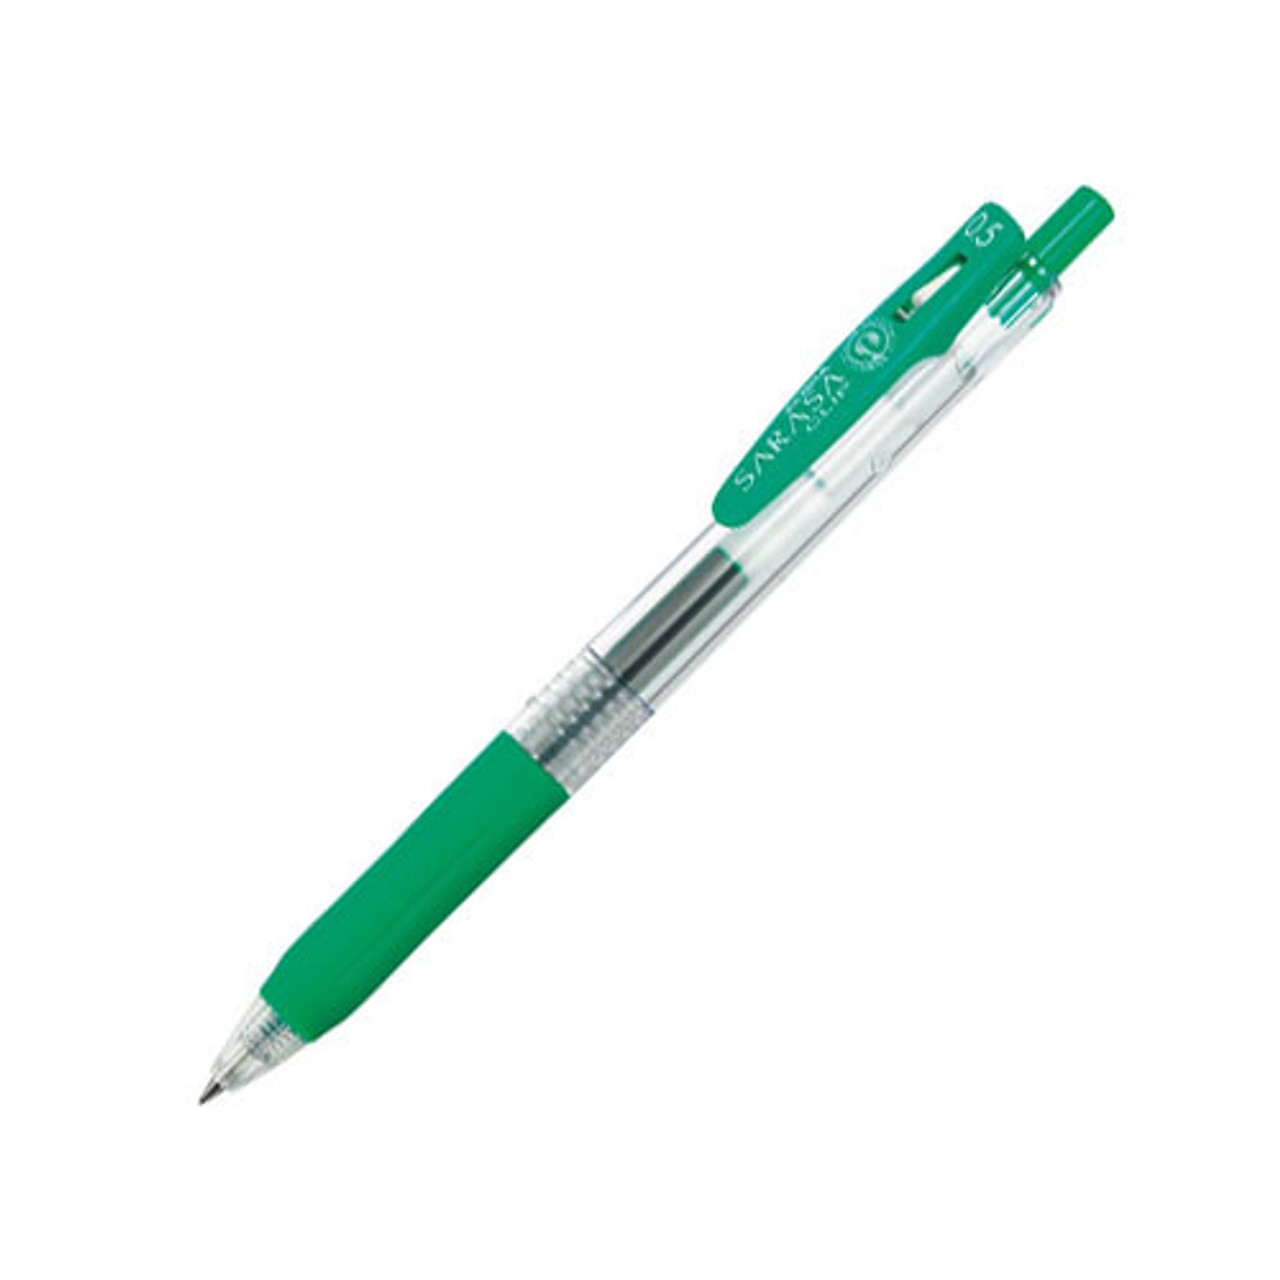 Zebra Sarasa Clip Decoshine Gel Retractable Pens 0.5 mm Shiny Green